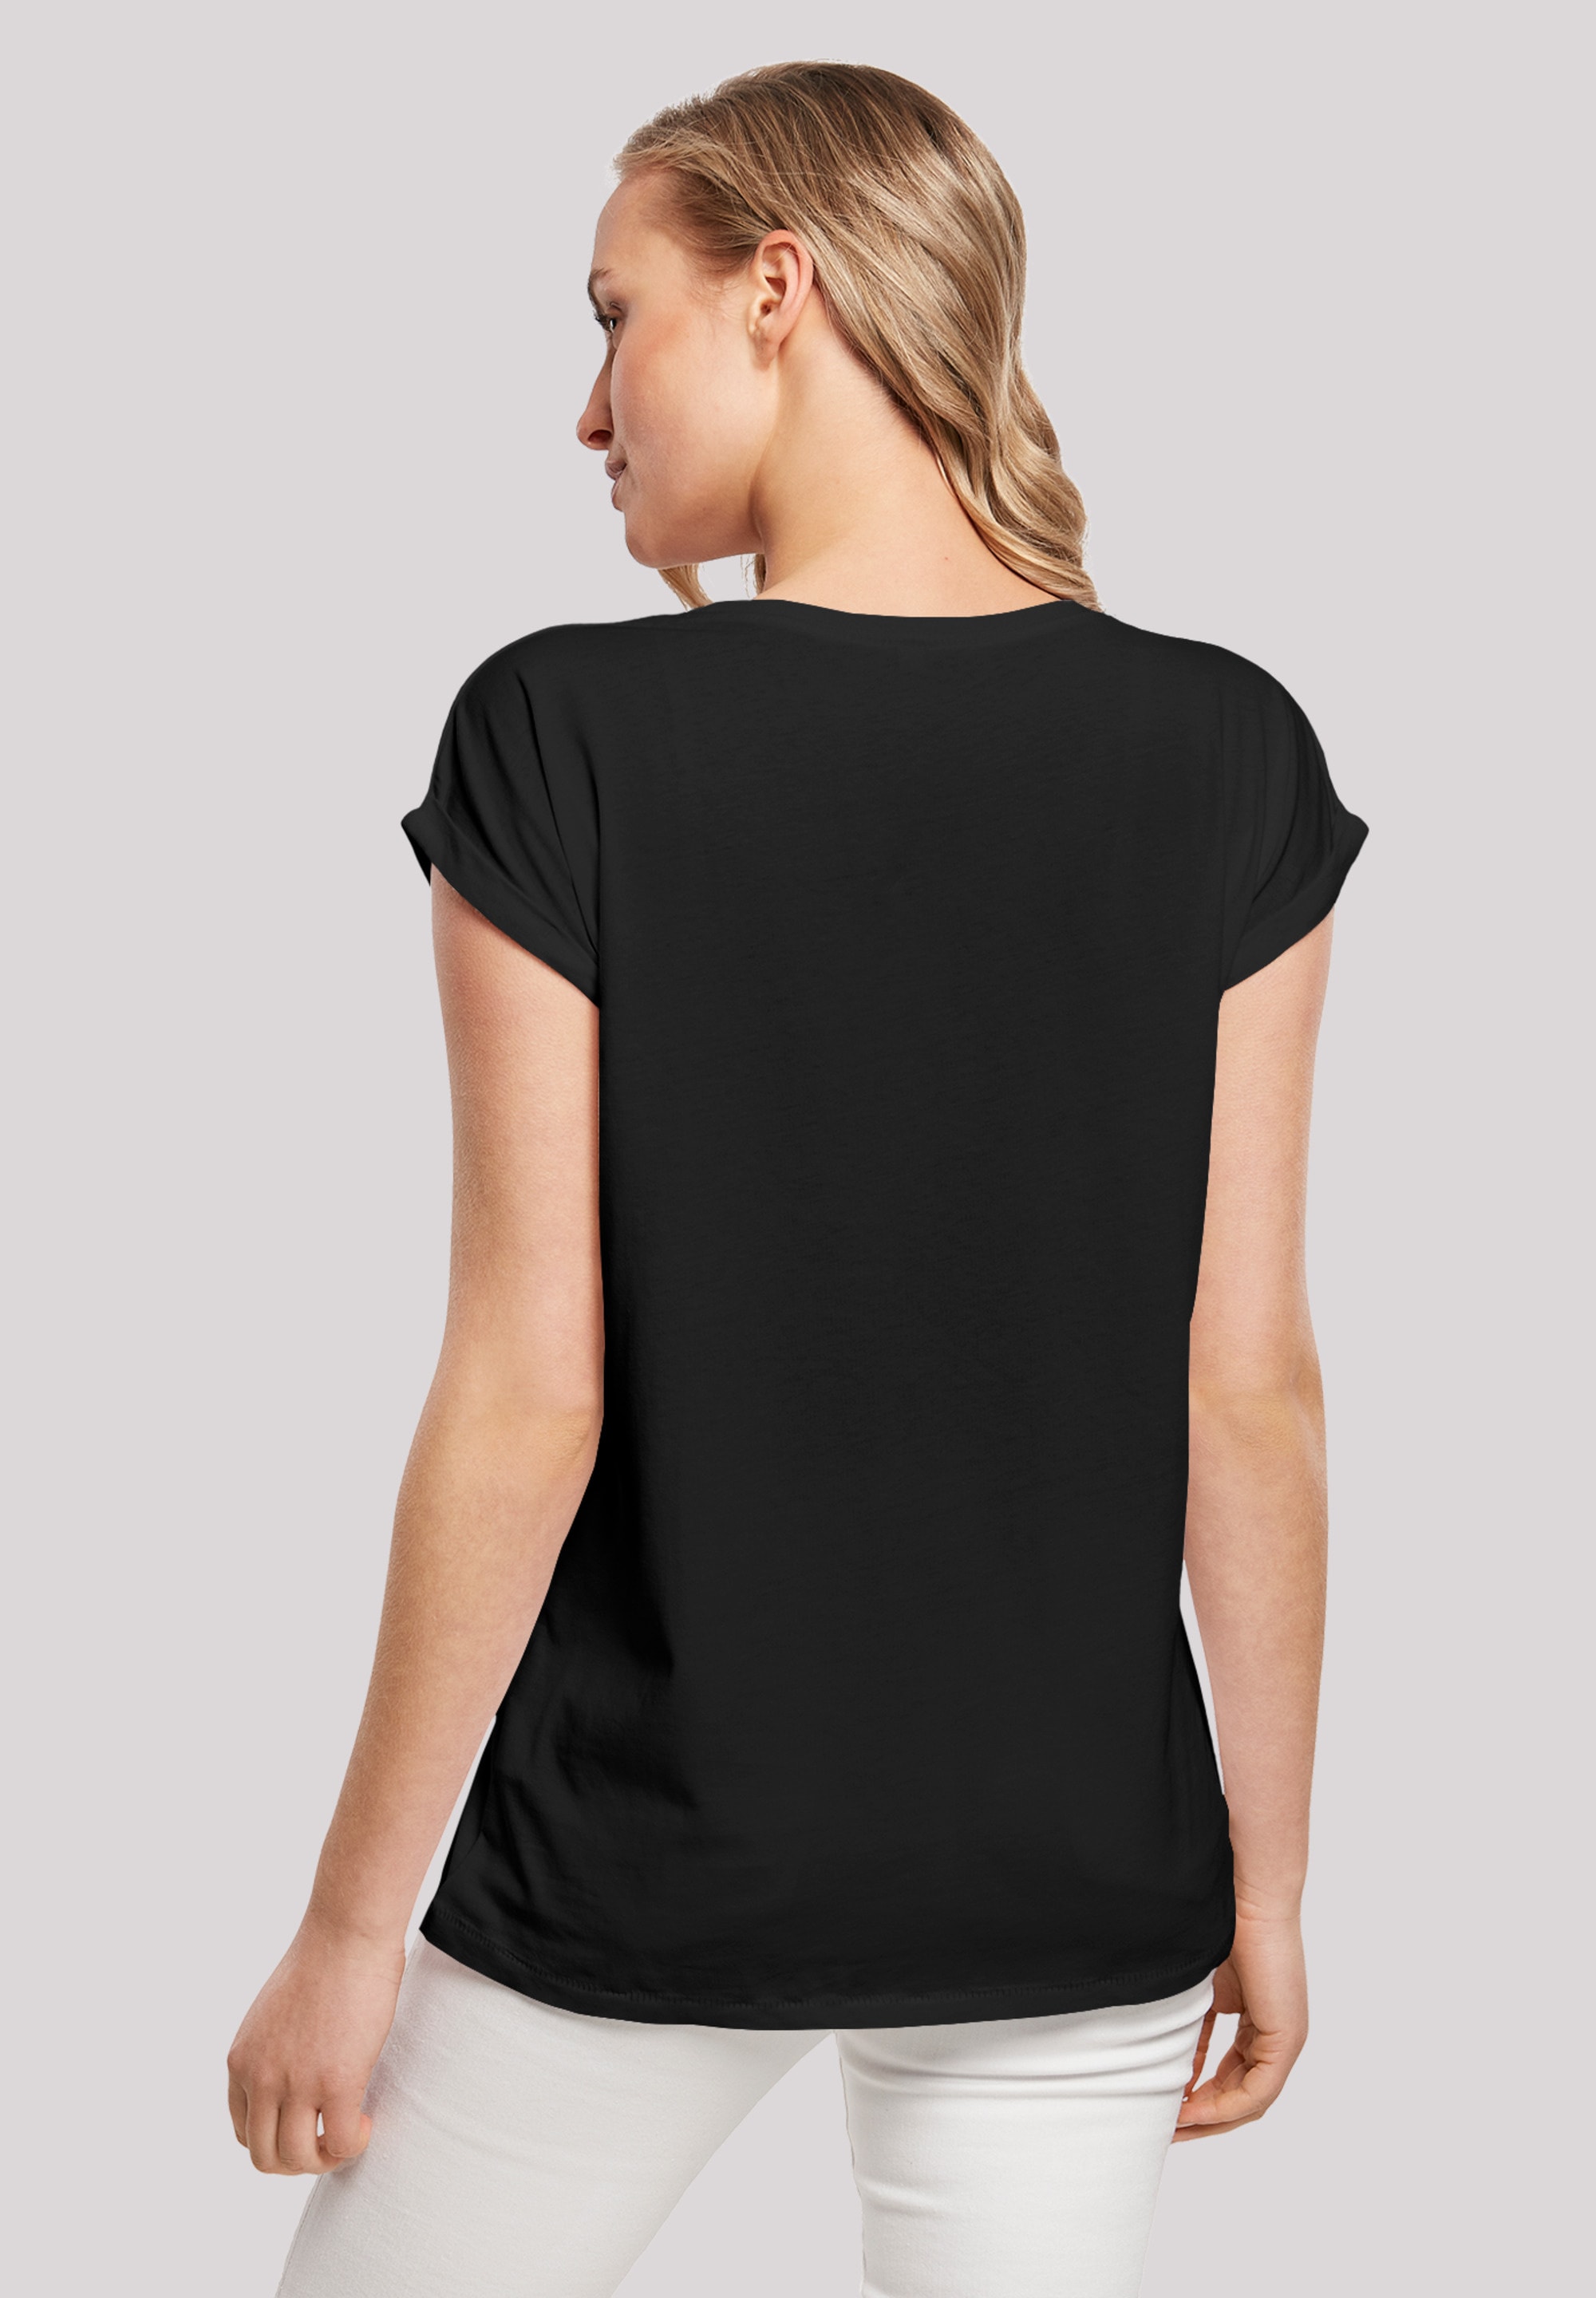 T-Shirt Feuerstein«, walking Ärmel,Bedruckt Merch,Regular-Fit,Kurze F4NT4STIC Damen,Premium »Pebbles online I\'m |